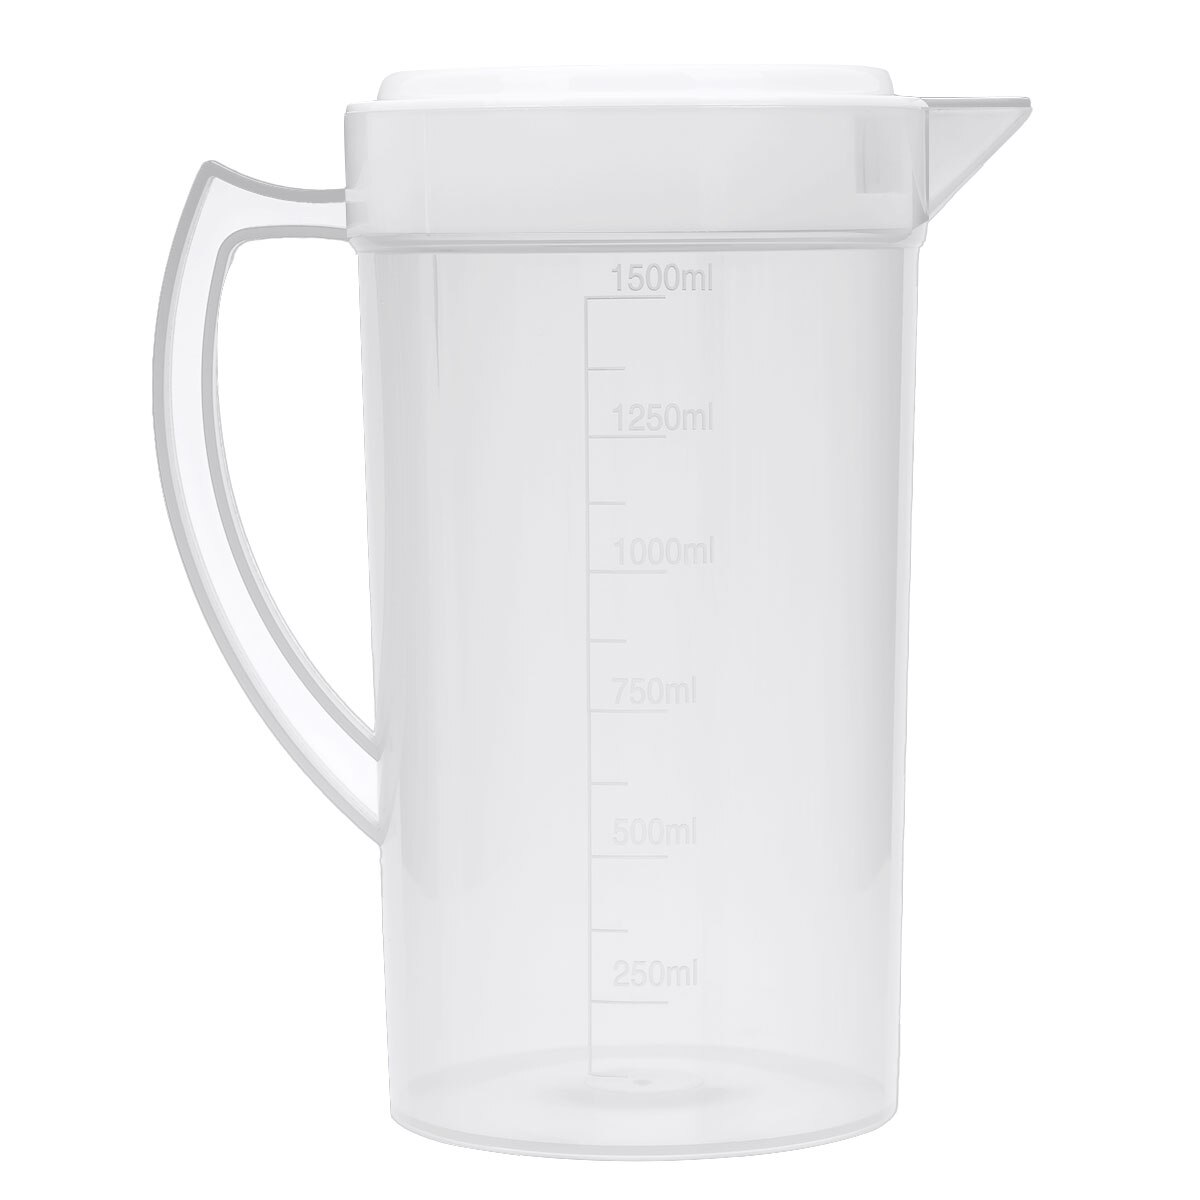 Stor kapacitet mad grade plast måle vand kande kande køkken kande vandfiltre med låg til is te juice øl: Hvid 1500ml